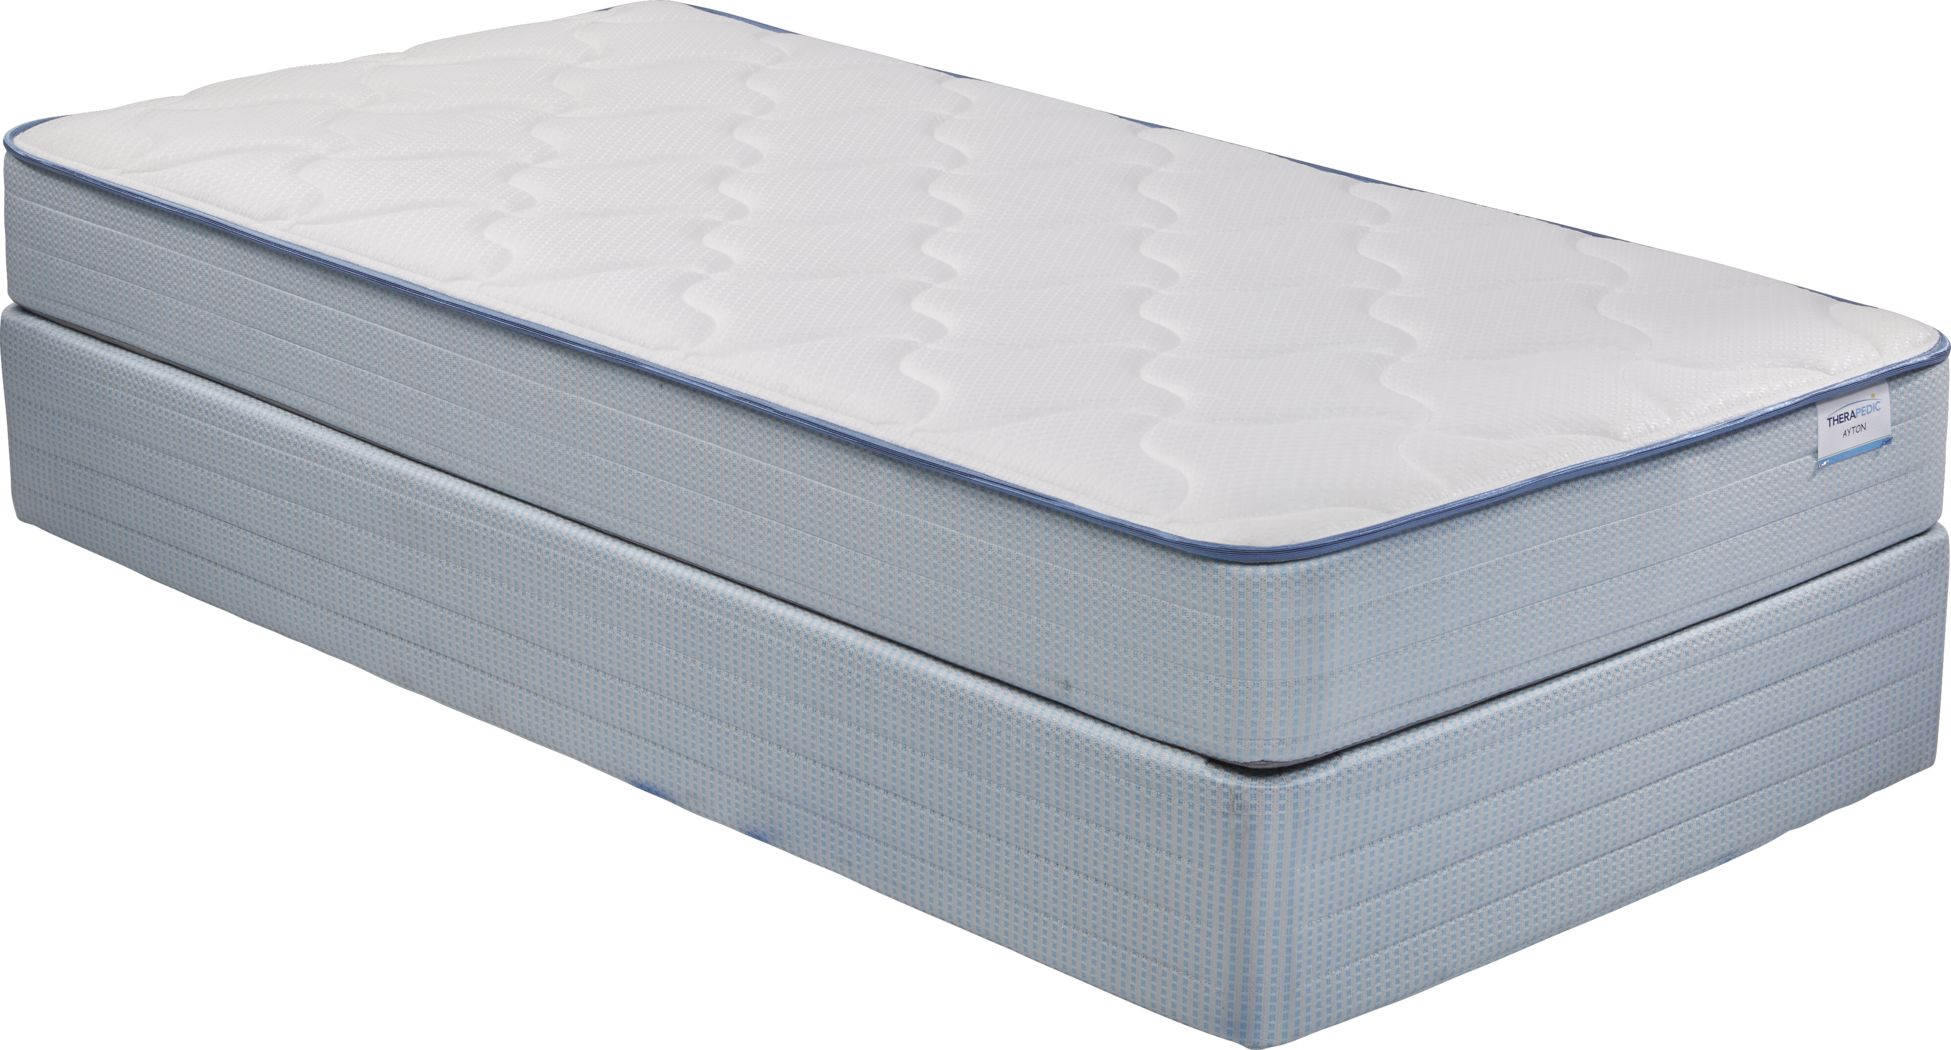 sales on twin mattress sets